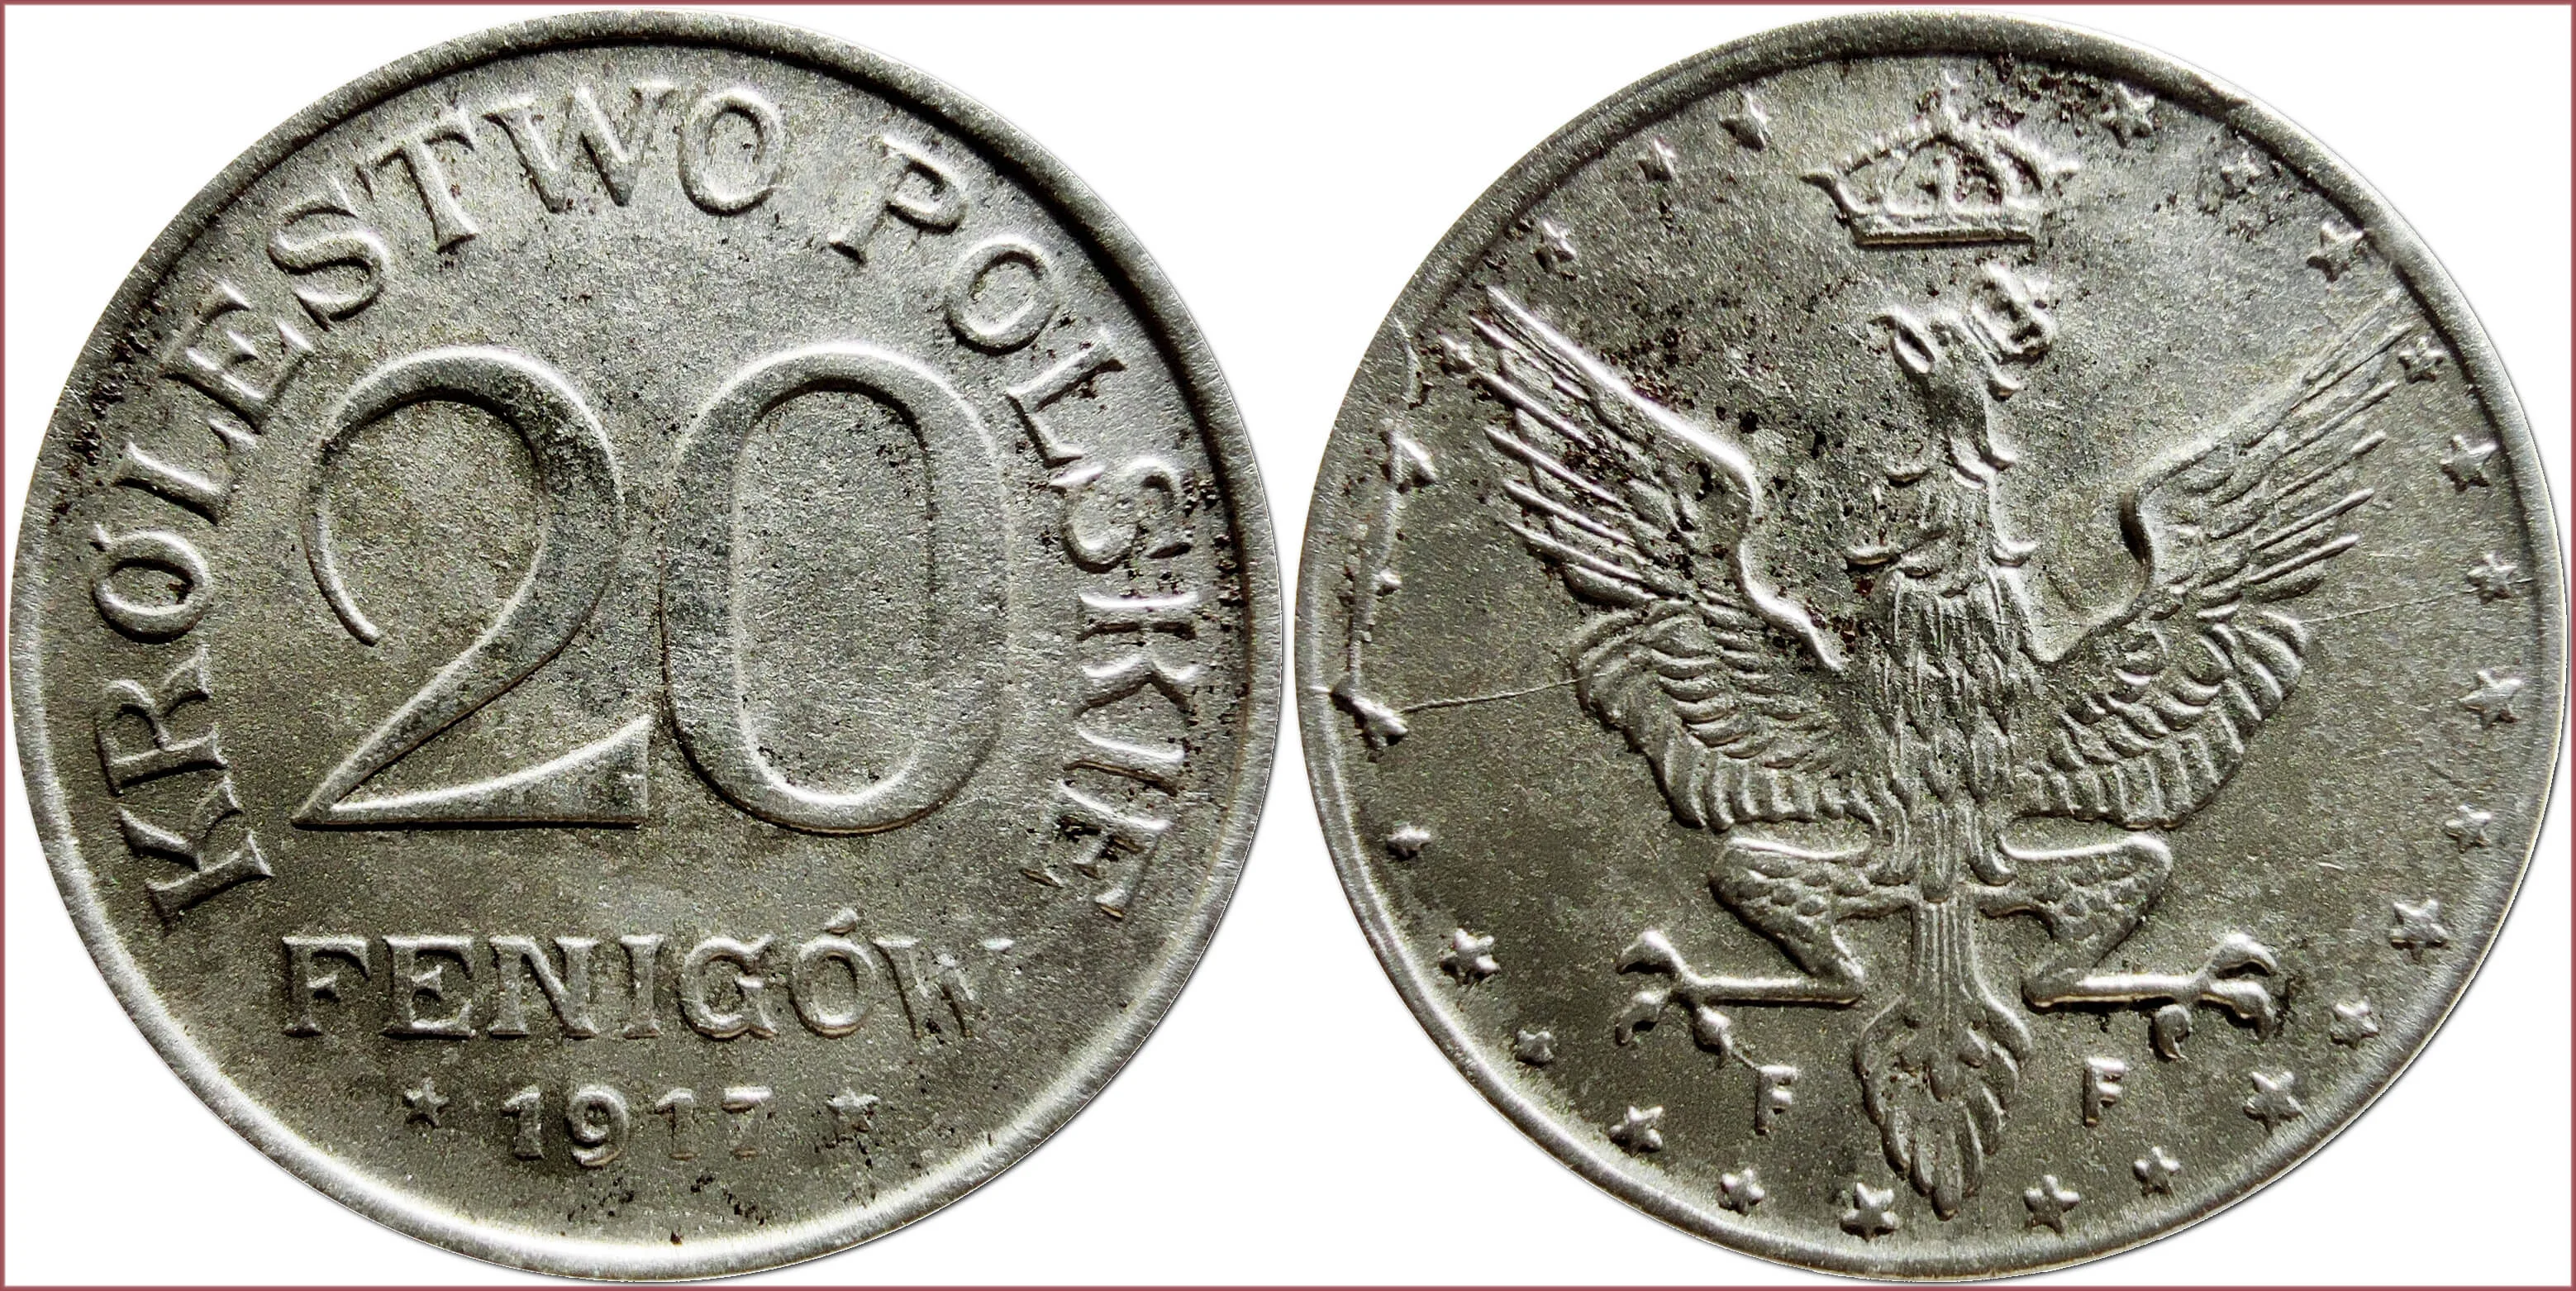 20 fenigów, 1917: Regency Kingdom of Poland